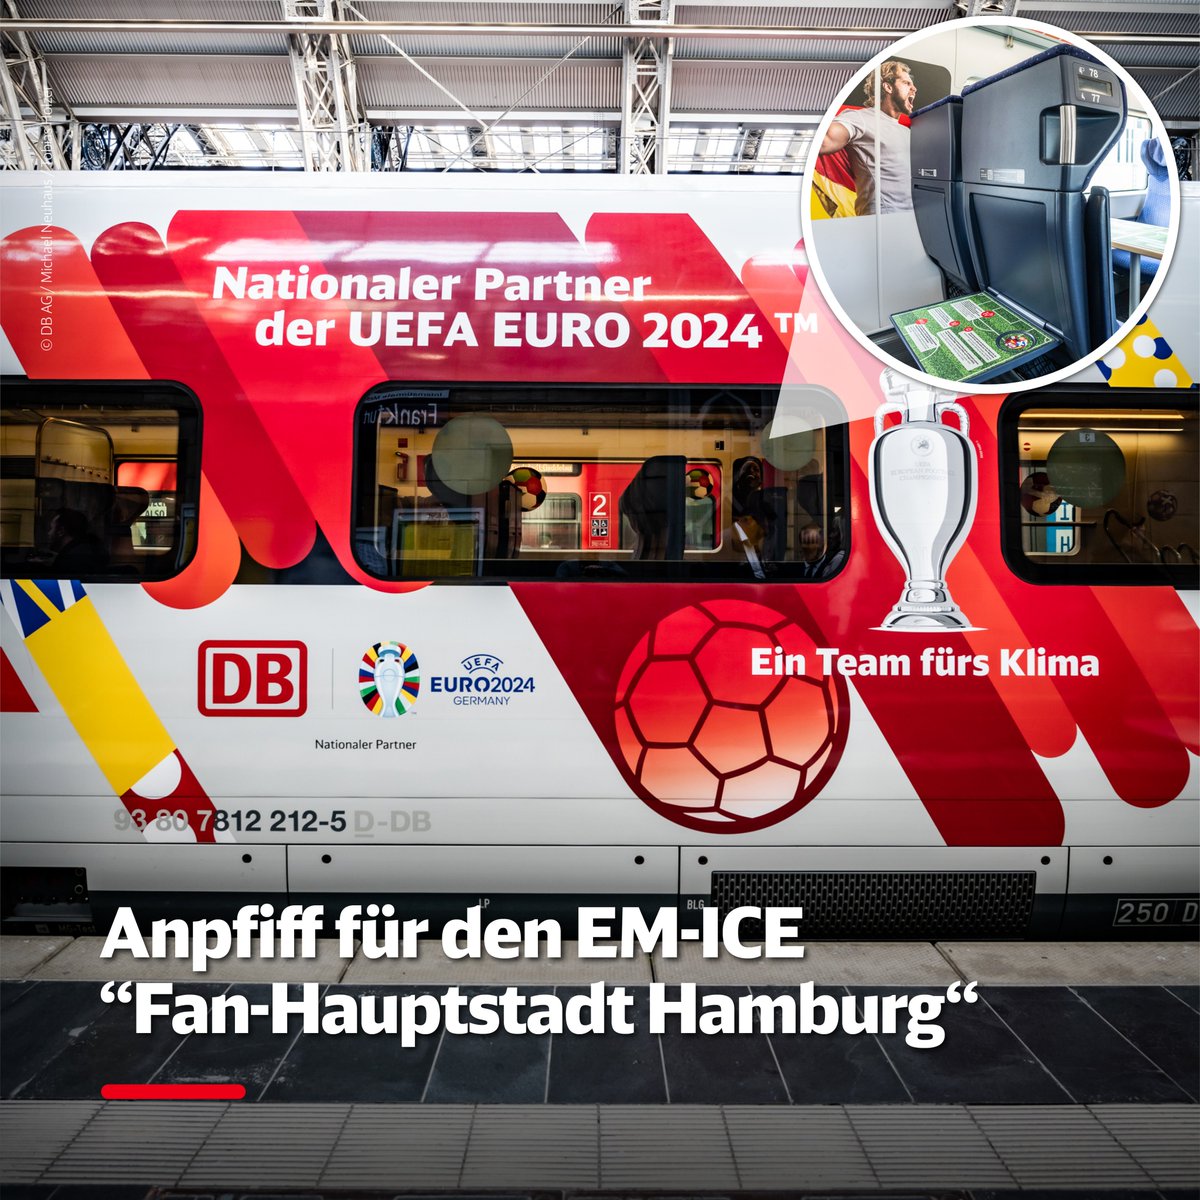 Der EM-ICE 'Fan-Hauptstadt Hamburg' startet heute seine Reise durch Deutschland als rollender Botschafter zur UEFA EURO 2024™. Mit Fußballmotiven aus 24 Nationen und vielen Überraschungen an Bord wird er zur einzigartigen Fan-Zone auf Schienen. deutschebahn.com/de/presse/pres… #EURO24